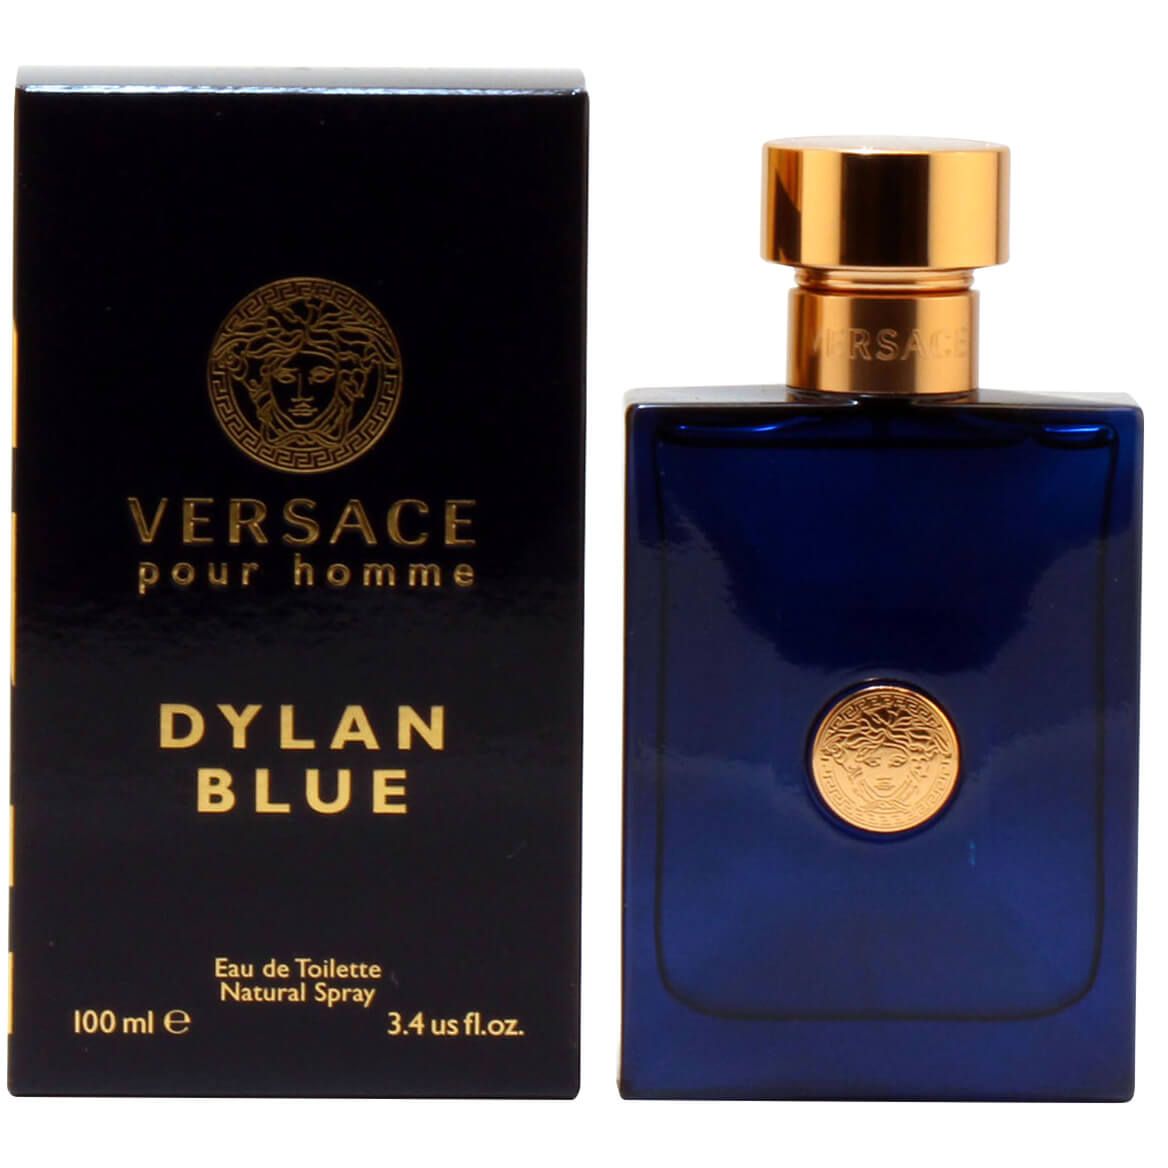 Versace Dylan Blue for Men EDT, 3.4 fl. oz. + '-' + 377221